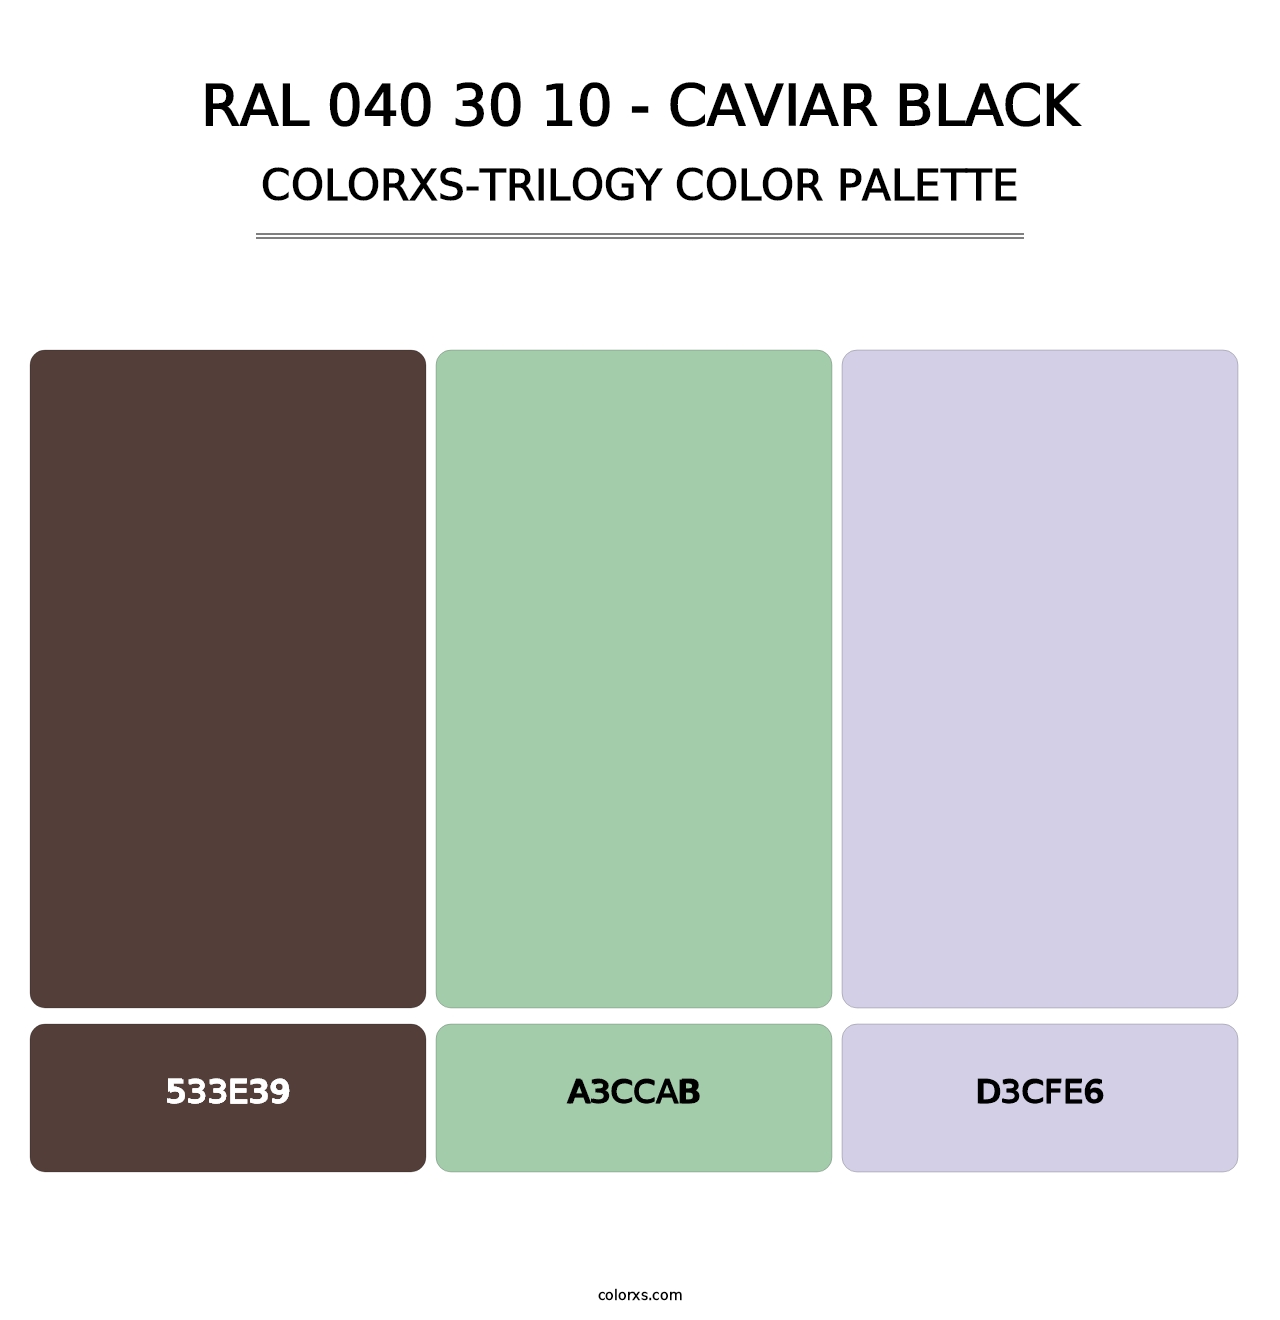 RAL 040 30 10 - Caviar Black - Colorxs Trilogy Palette